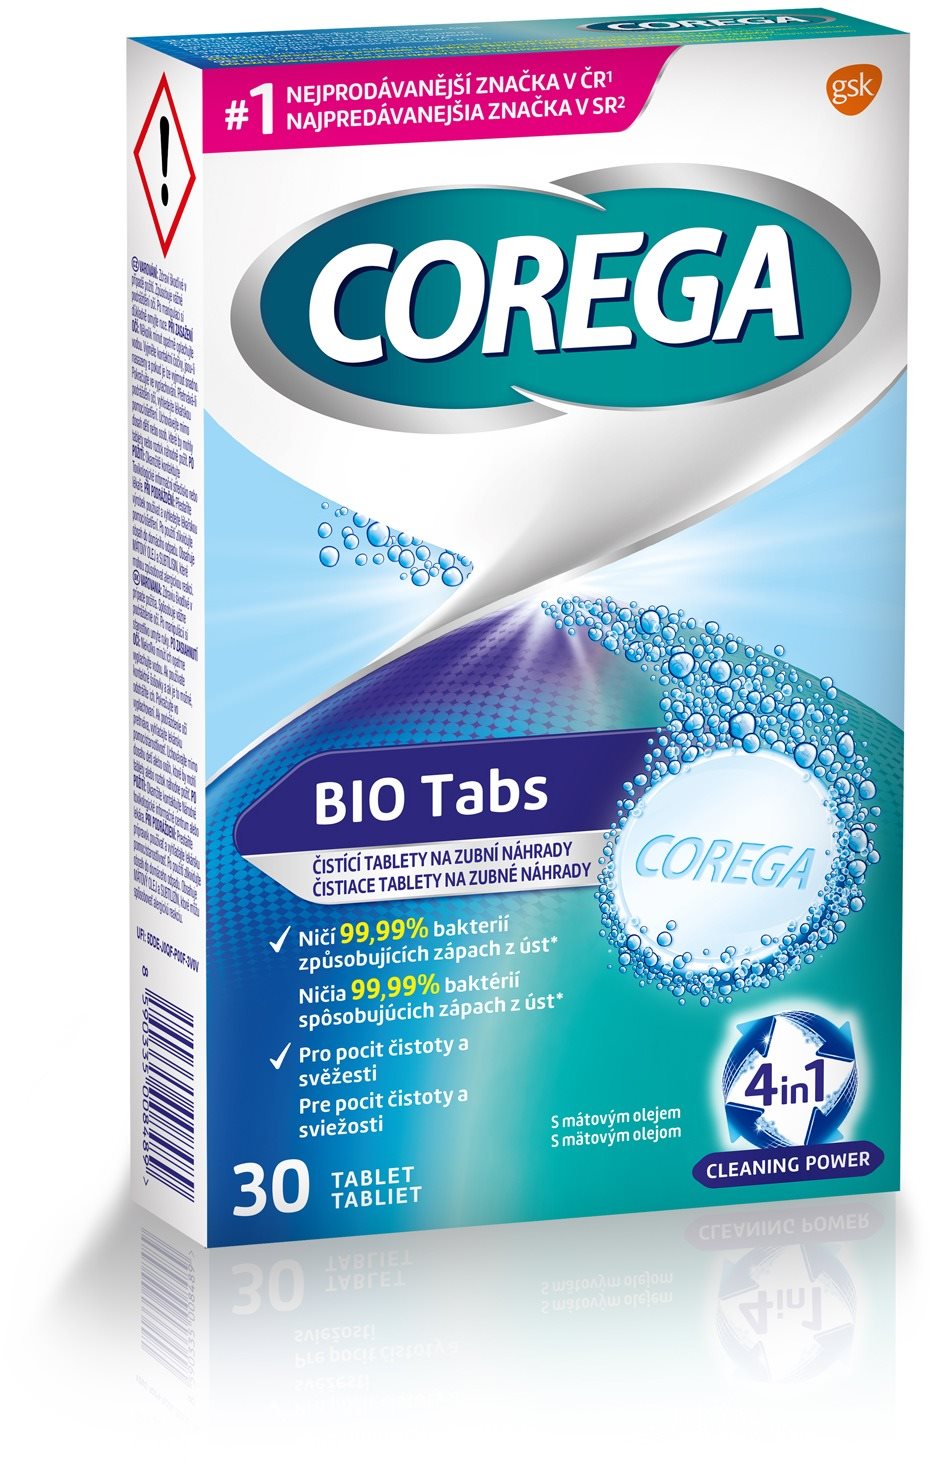 Műfogsortisztító tabletta COREGA antibakteriális 30 darab